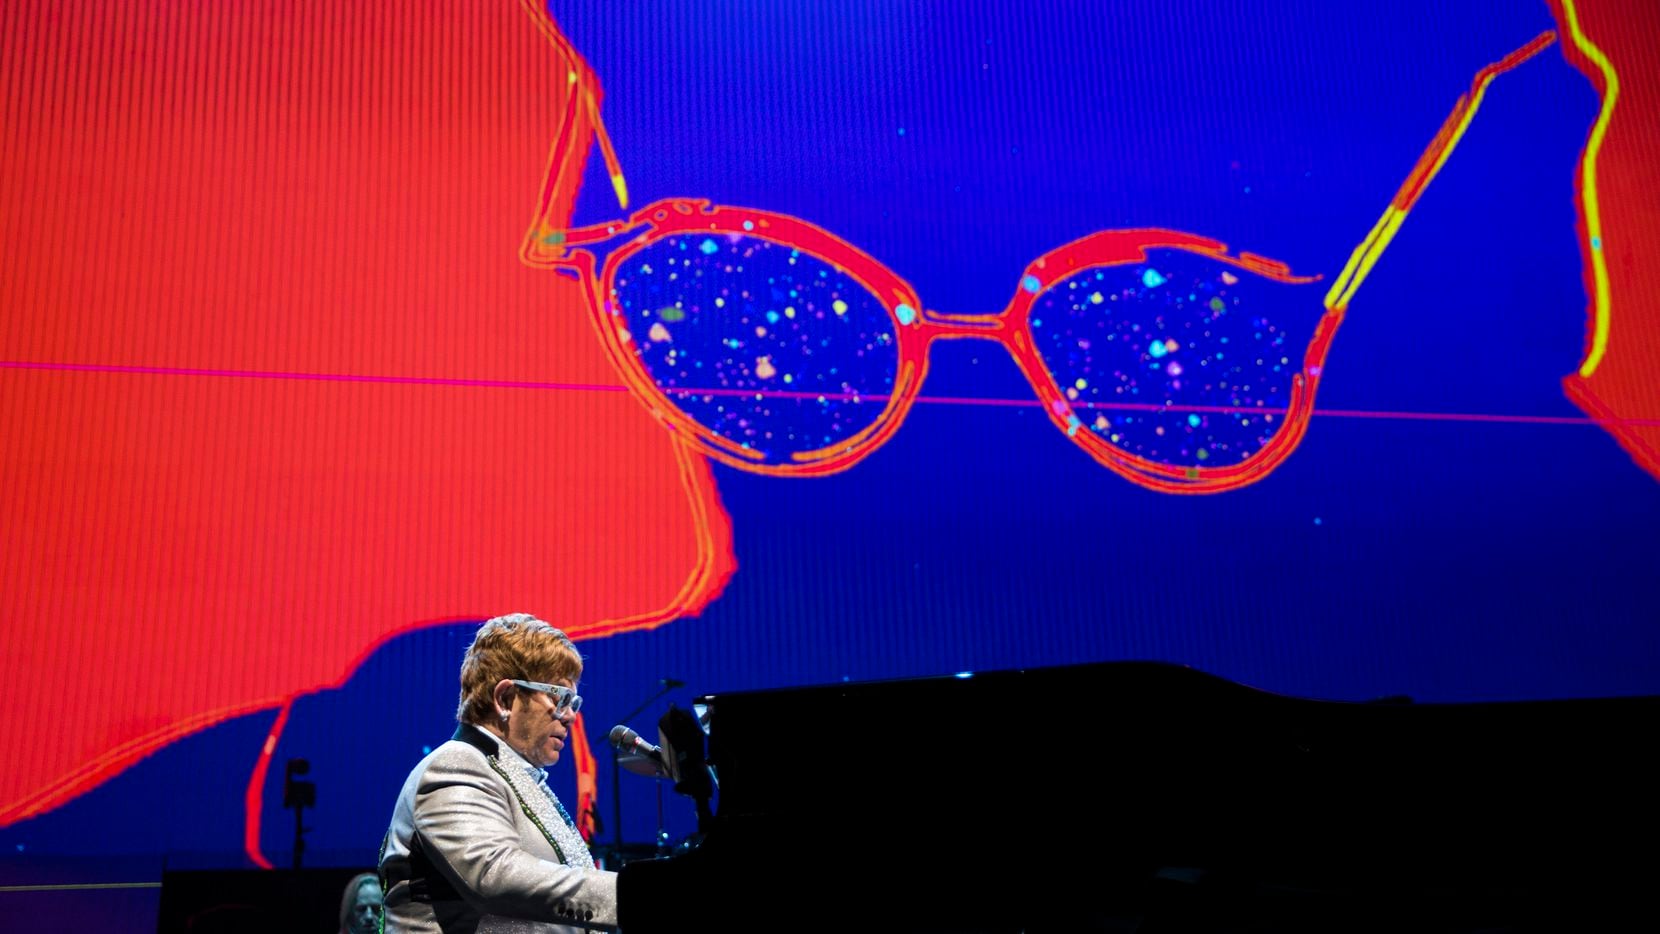 Fotos y videos del concierto de Elton John en Dallas